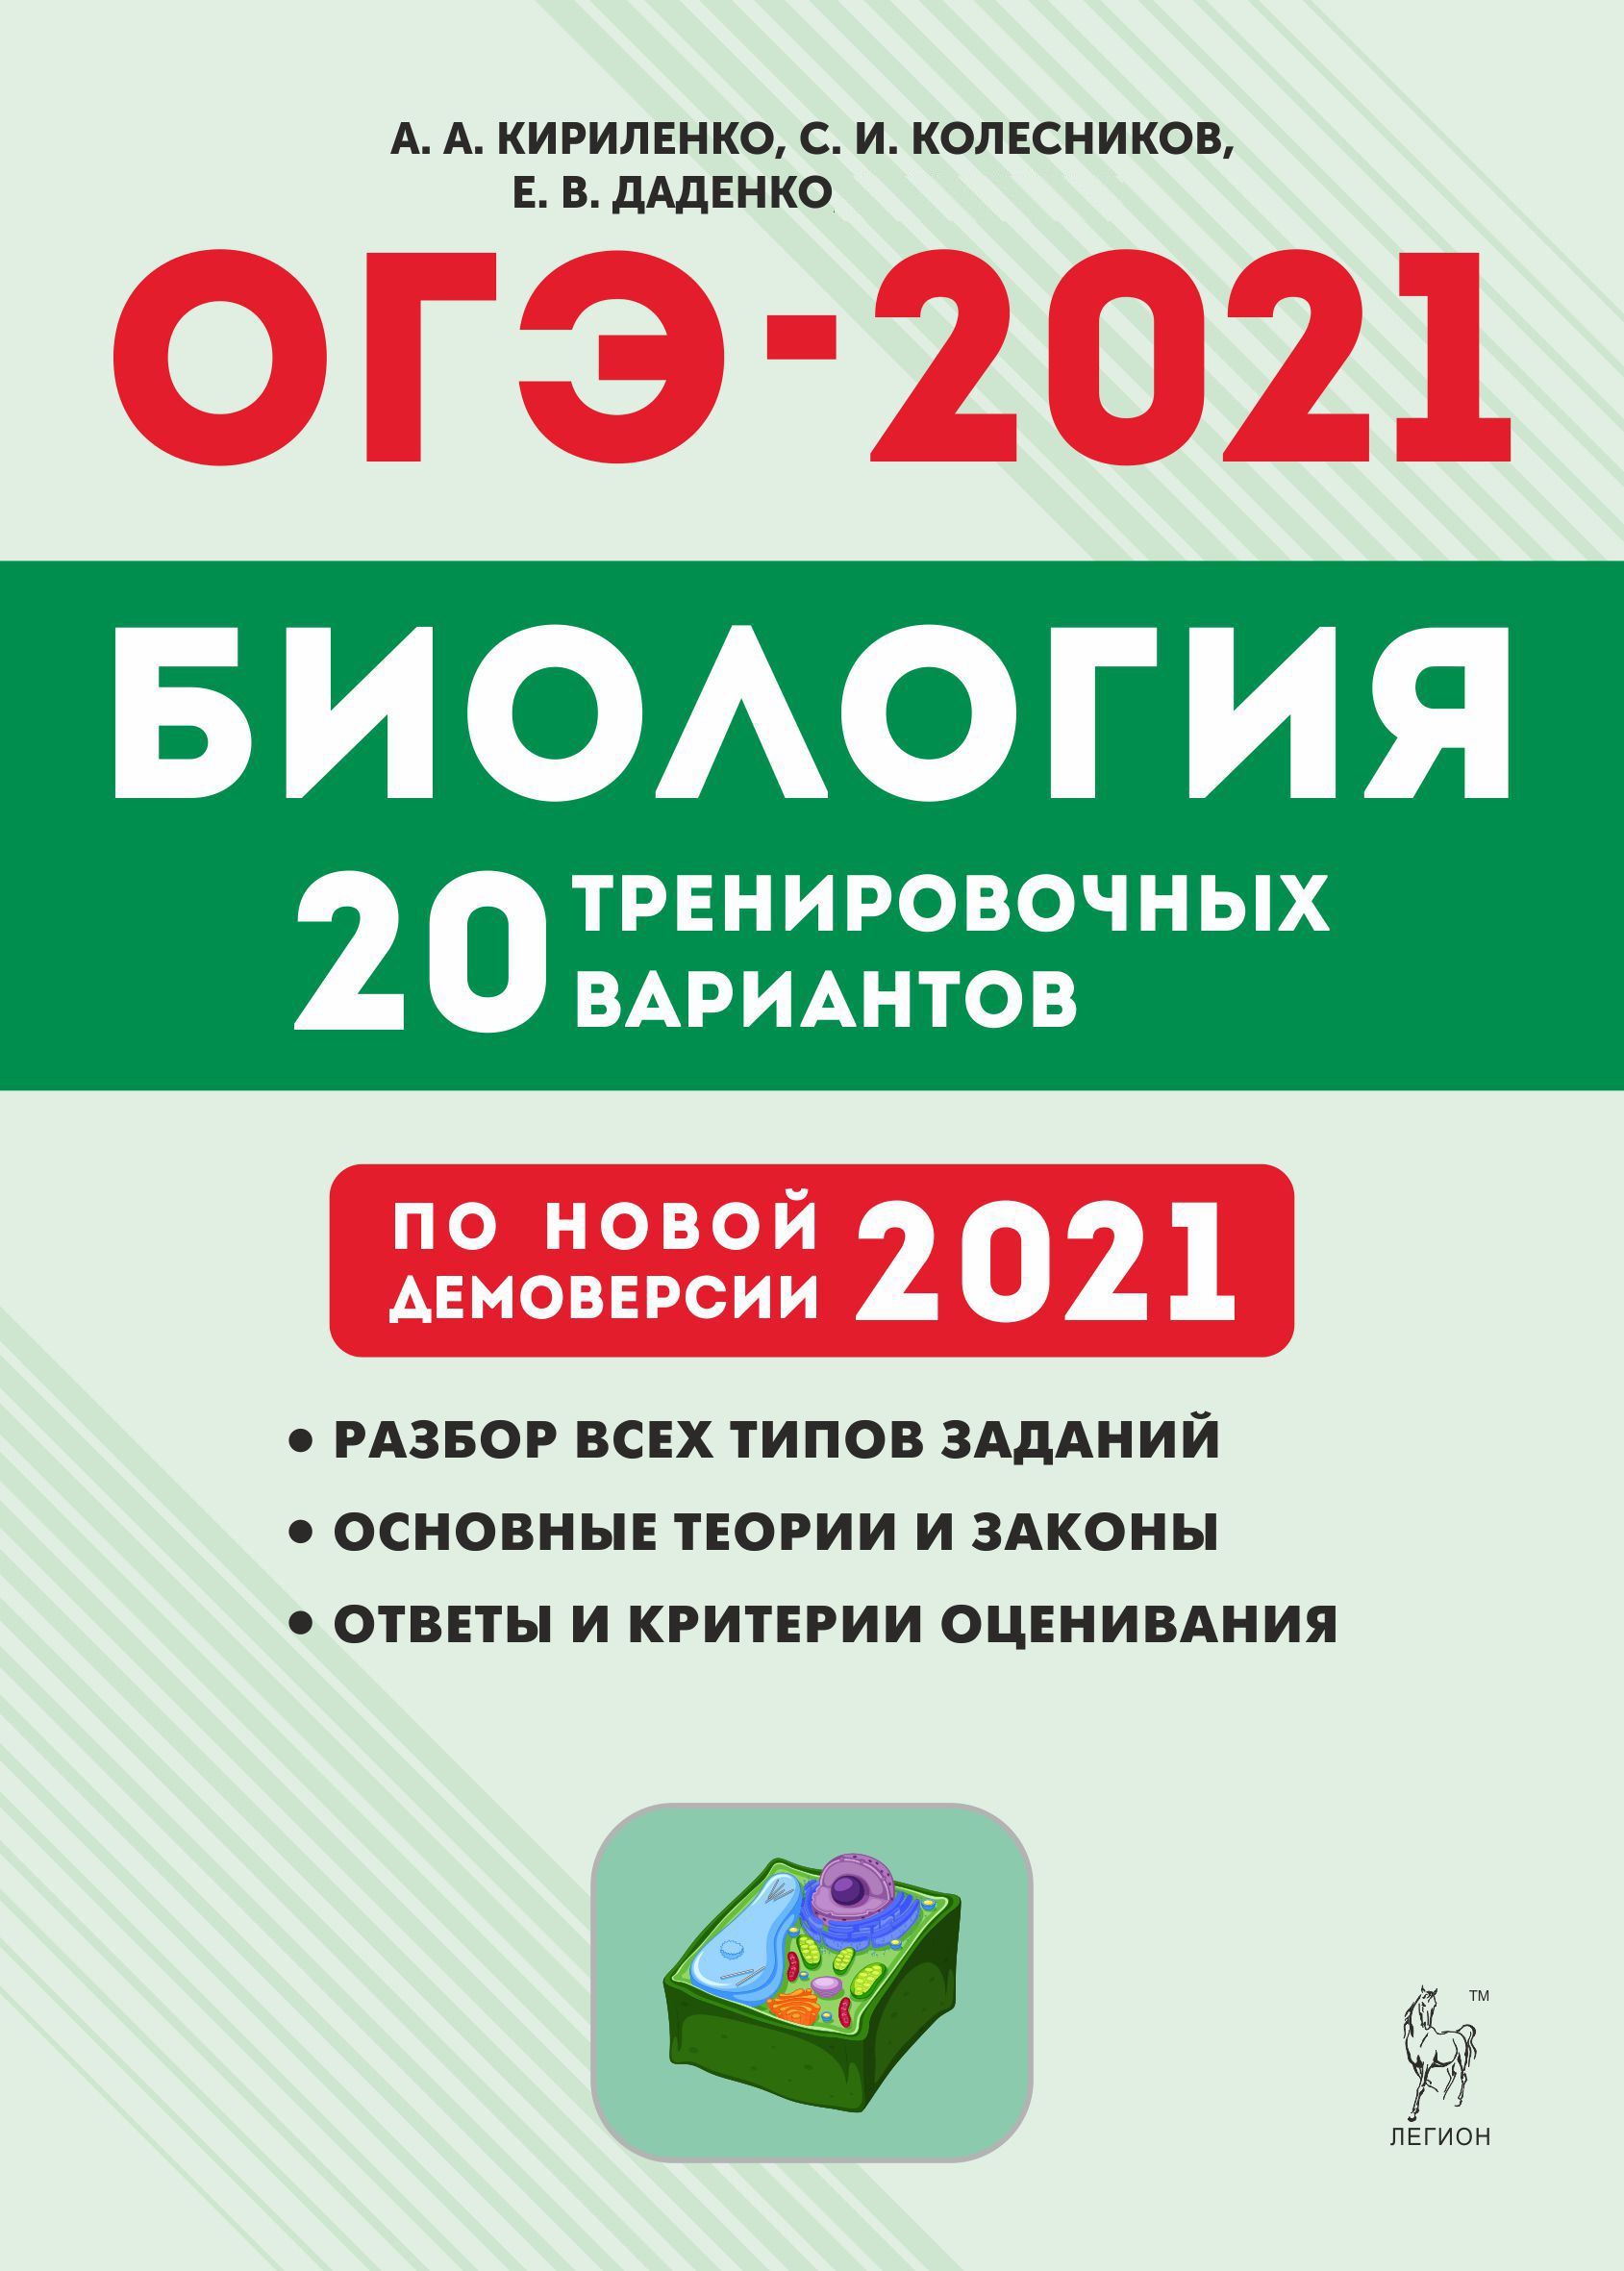 Биология. Подготовка к ОГЭ-2021. 9 класс. 20 тренировочных вариантов по демоверсии 2021 года